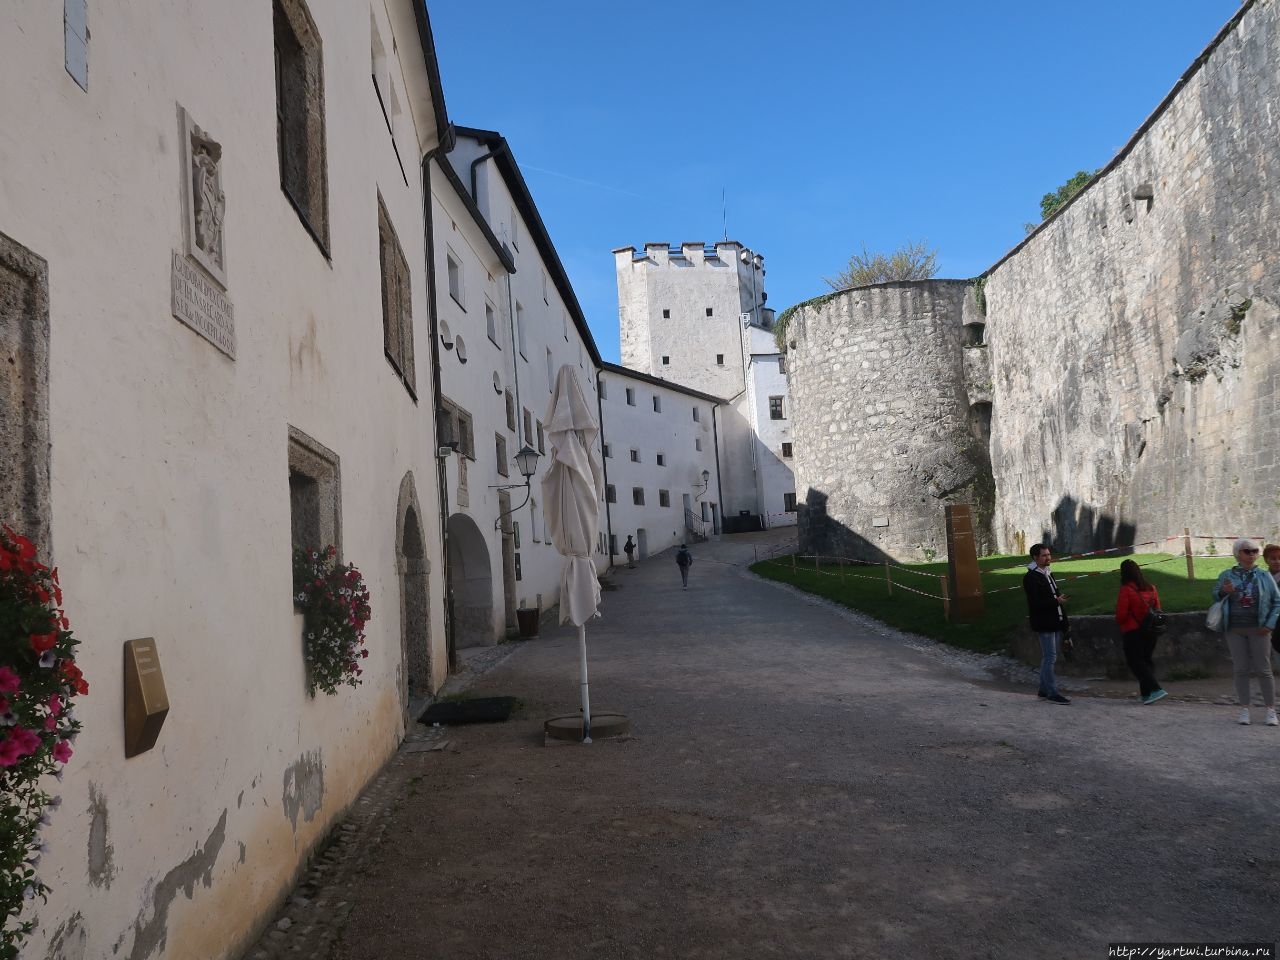 Крепость была ранее тюрьмой, складом и казармой. Зальцбург, Австрия